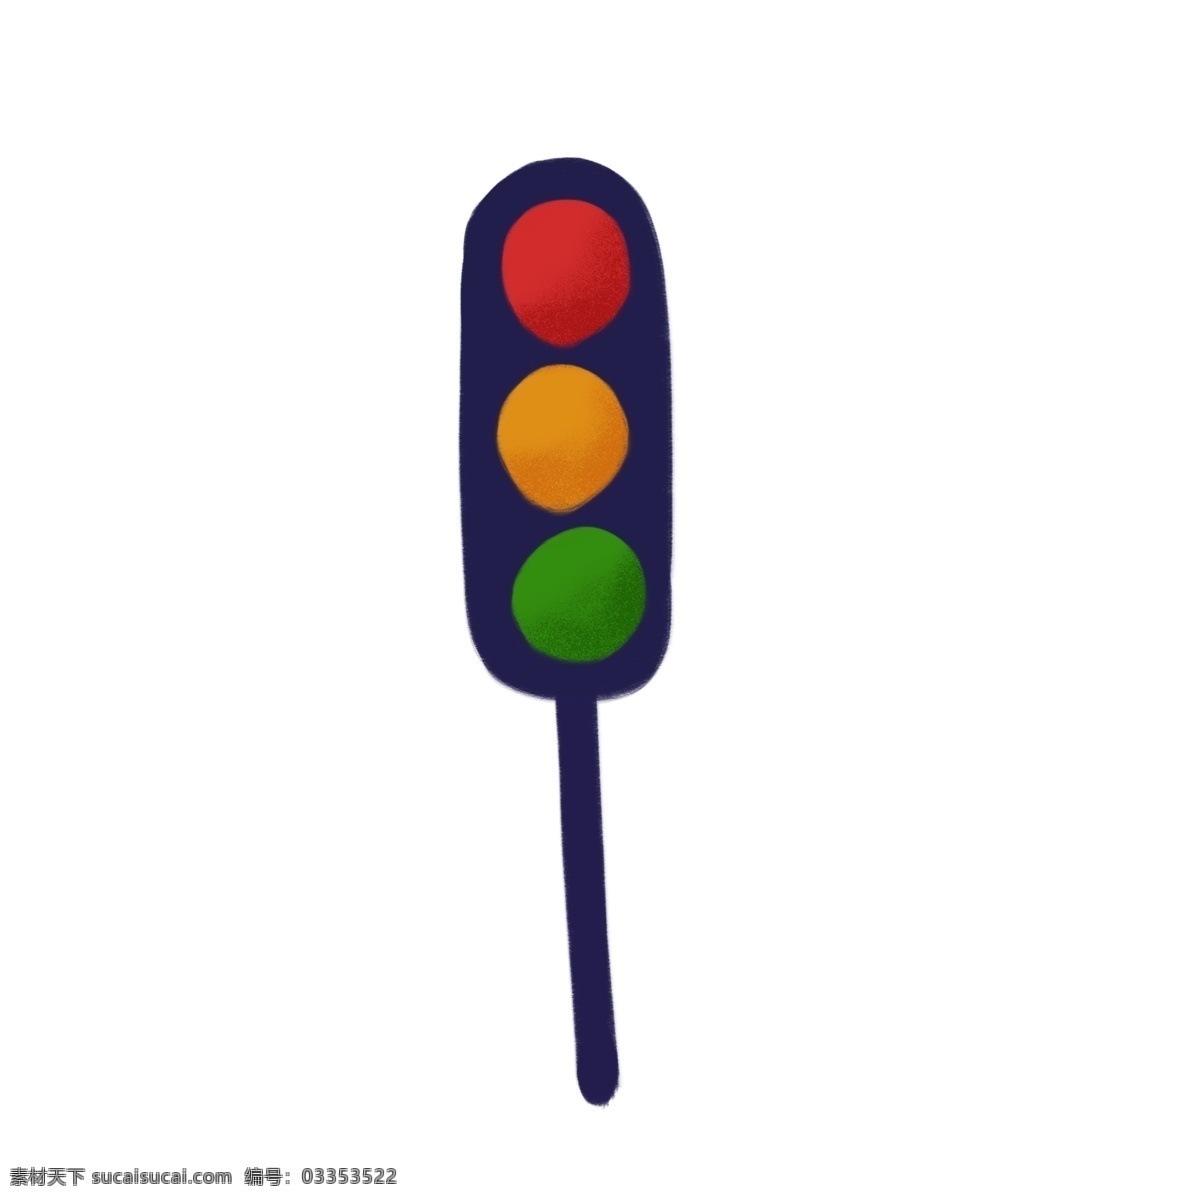 手绘 交通灯 红绿灯 卡通 简约 插画 交通元素 指示灯